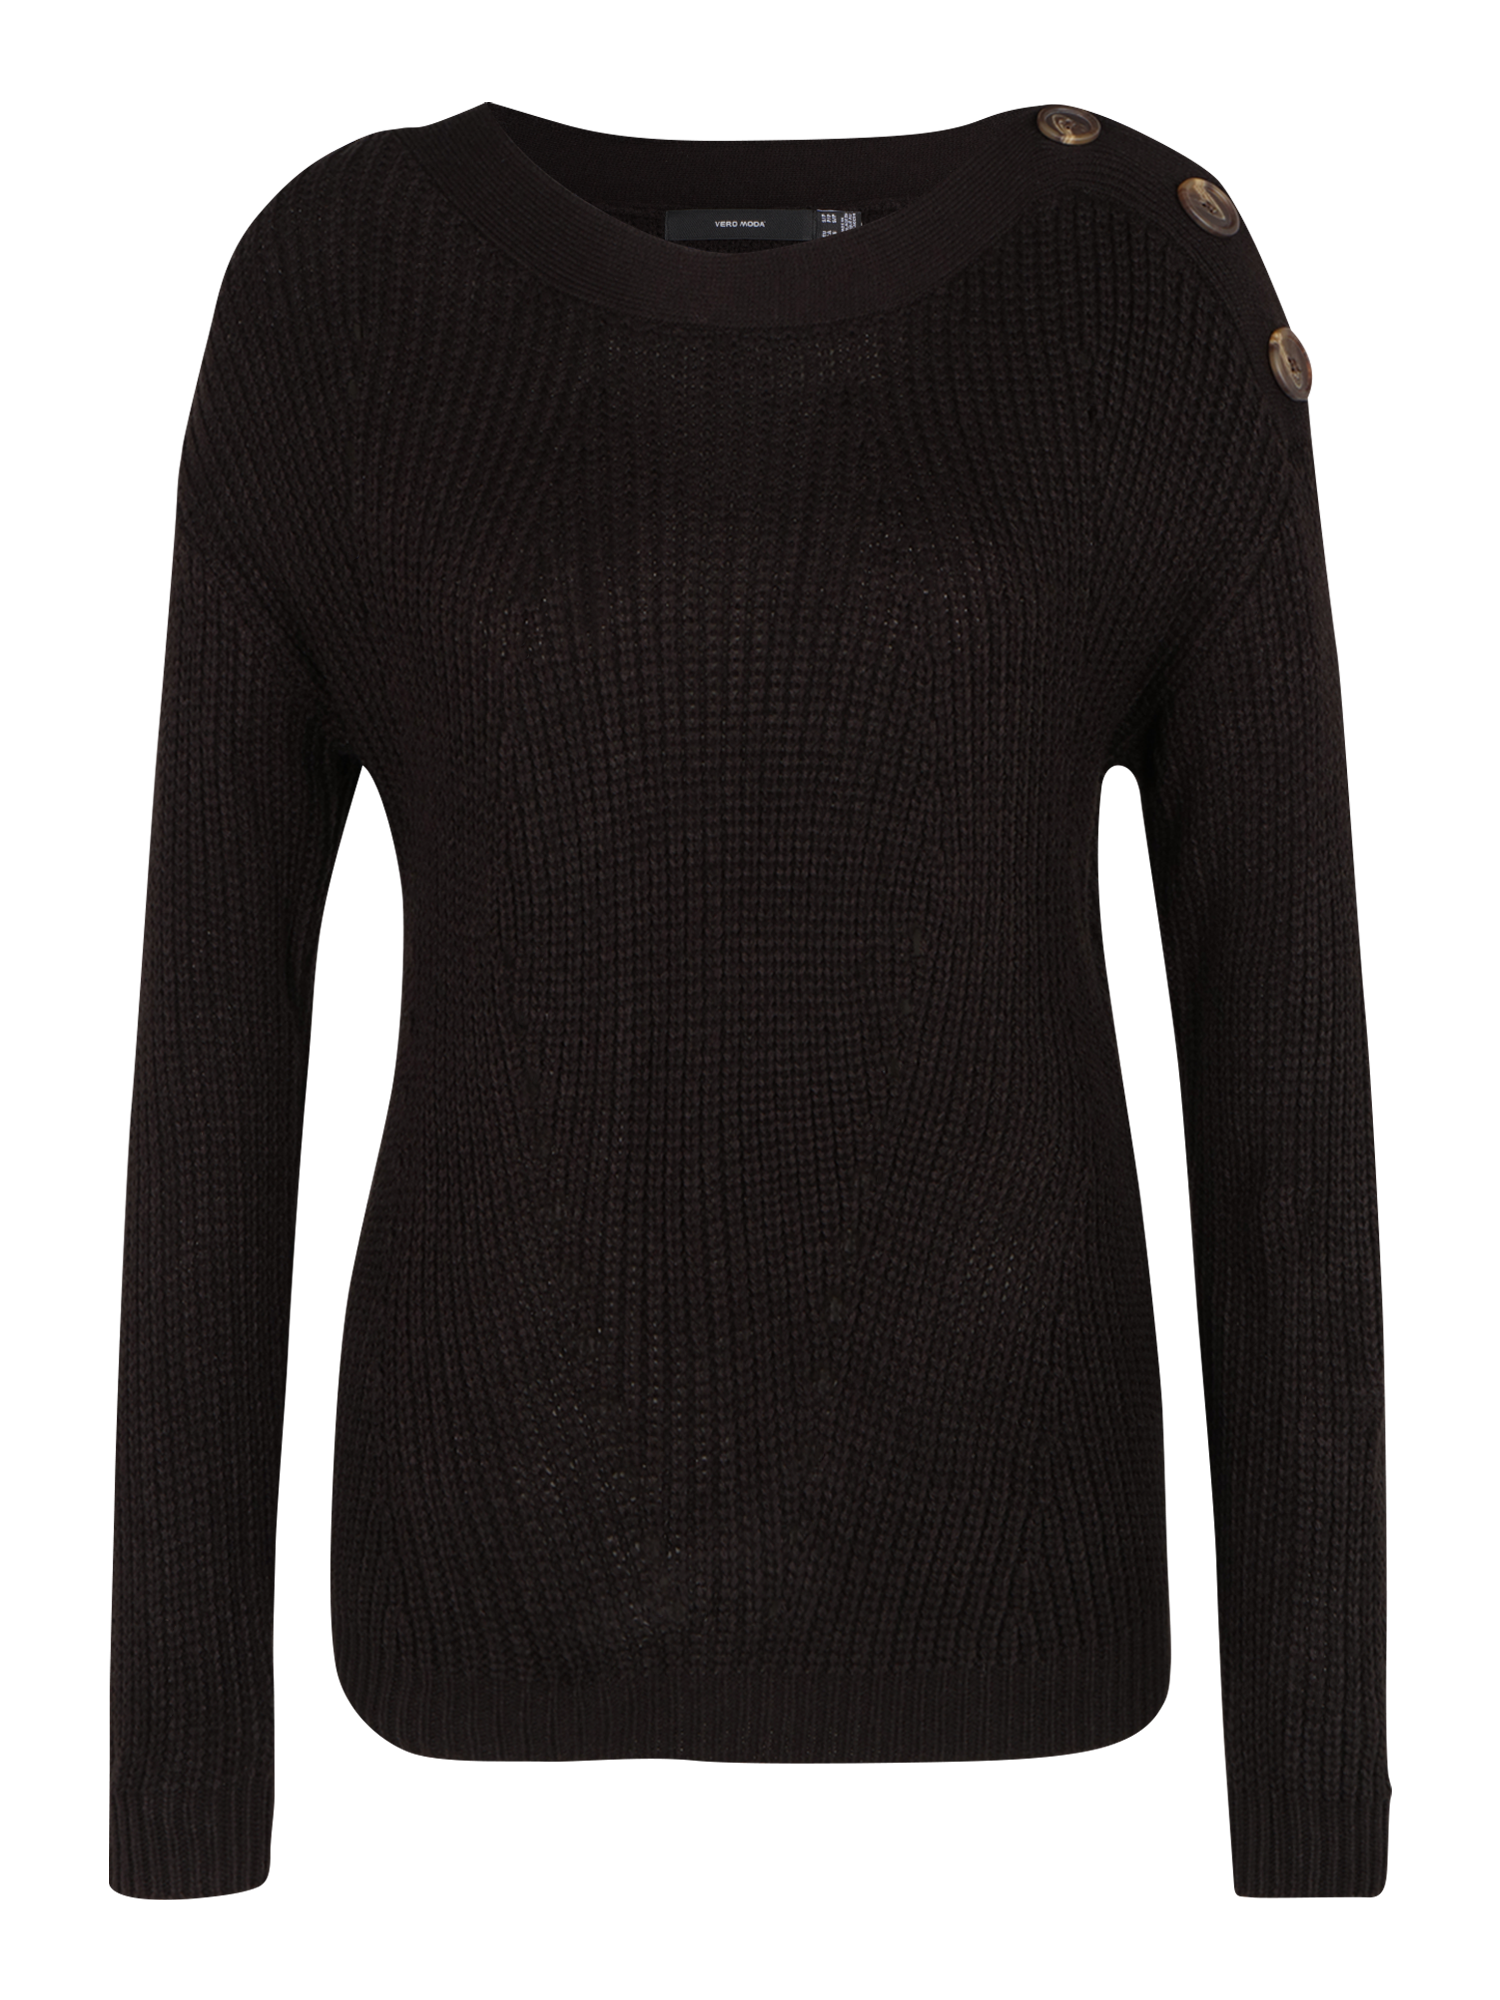 Swetry & dzianina Odzież Vero Moda Petite Sweter SAYLA w kolorze Czarnym 